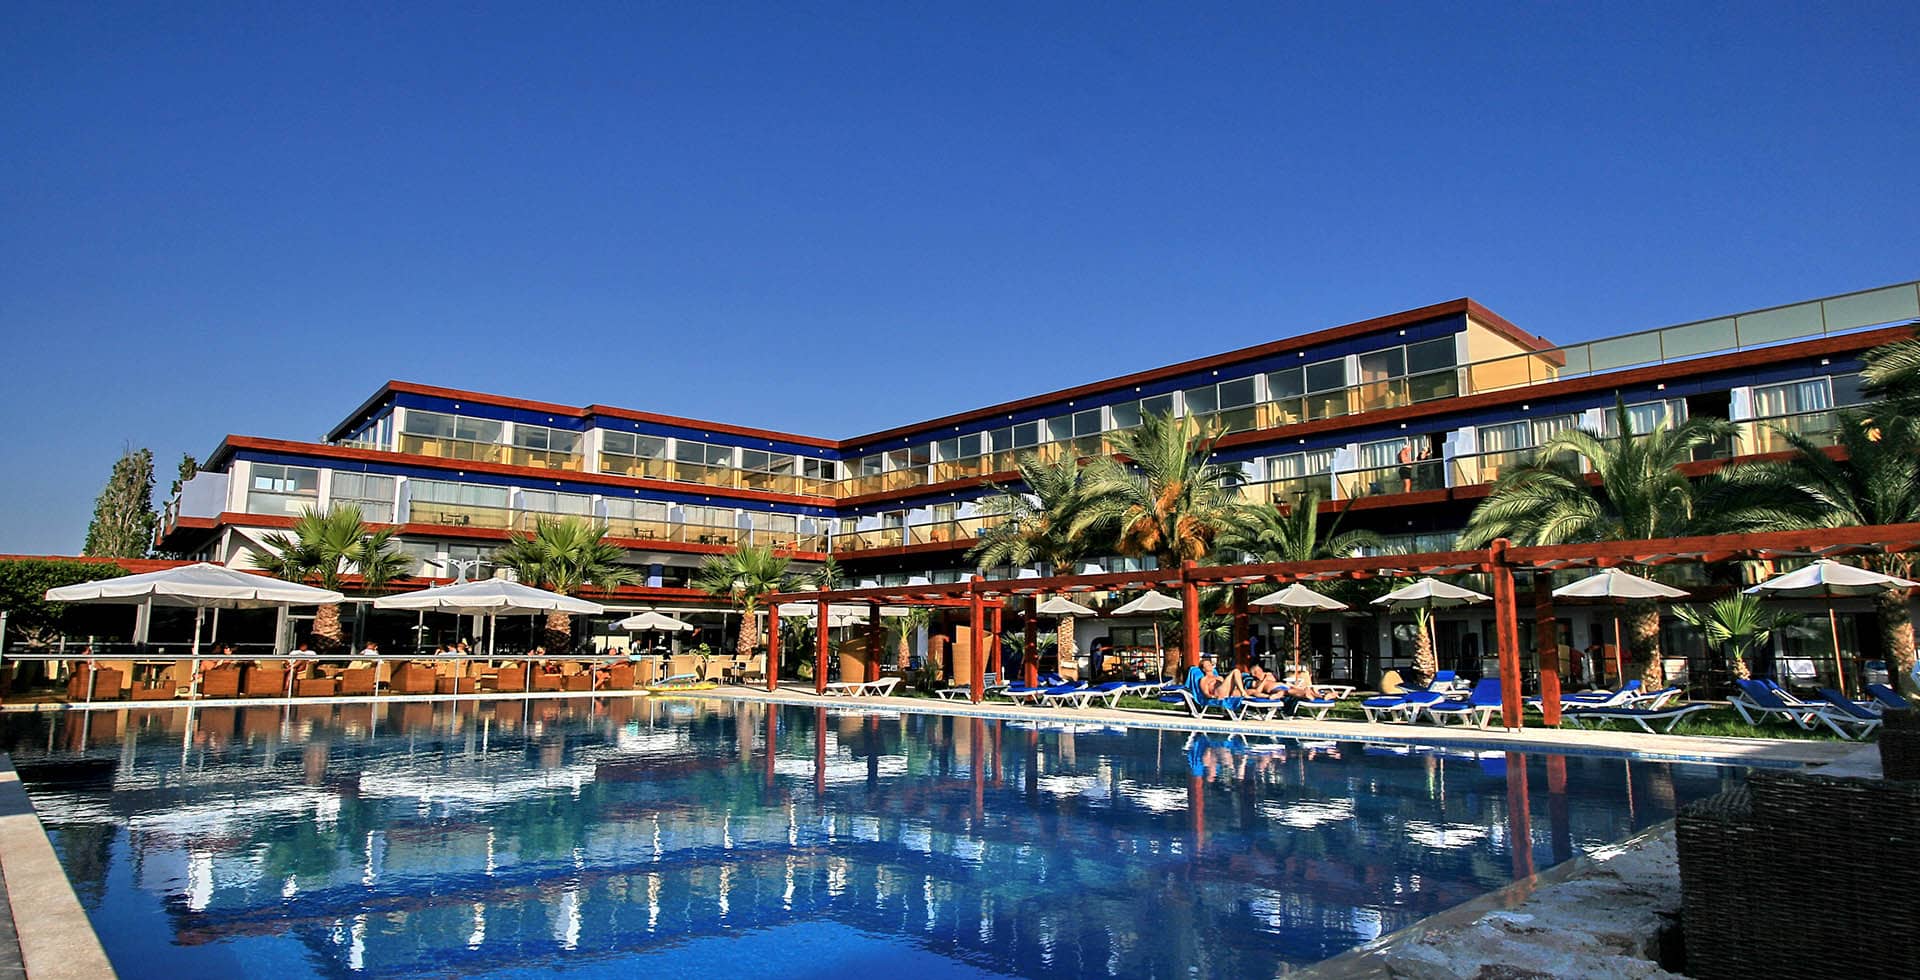 4* All Senses Ocean Blue Sea Side Resort & Spa - Κρεμαστή, Ρόδος ✦ 2 Ημέρες (1 Διανυκτέρευση) ✦ 2 άτομα + 1 παιδί έως 12 ετών ✦ 12 ✦ 01/05/2022 έως 30/09/2022 ✦ Μπροστά στην Παραλία!